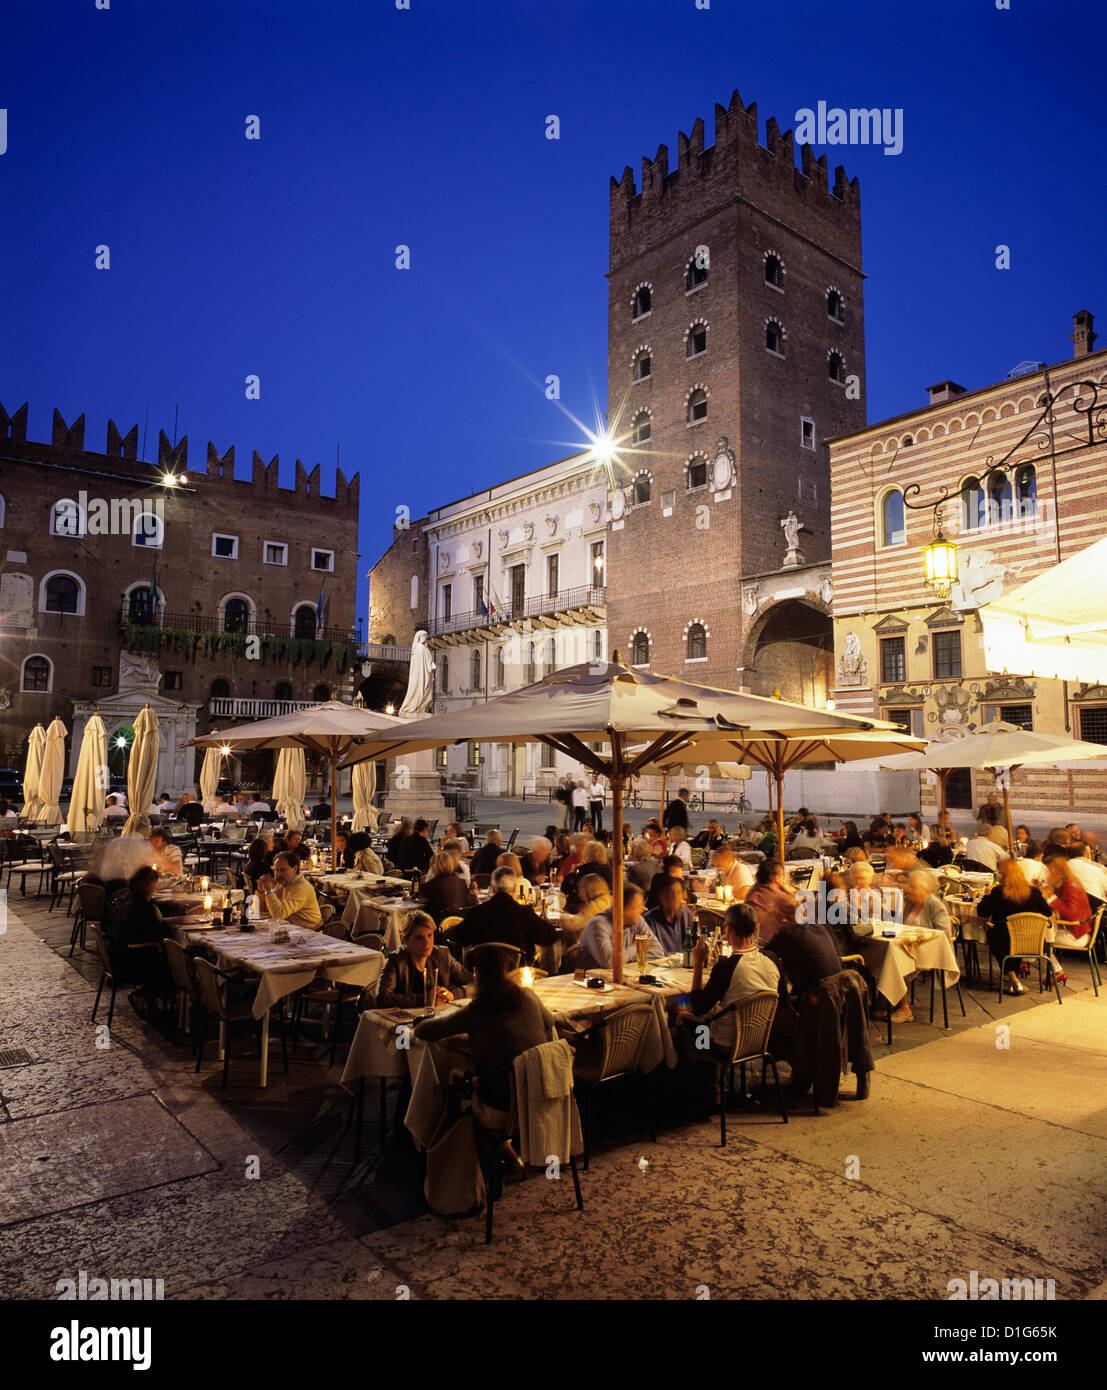 Les repas du soir dans la vieille ville, Vérone, UNESCO World Heritage Site, Vénétie, Italie, Europe Banque D'Images